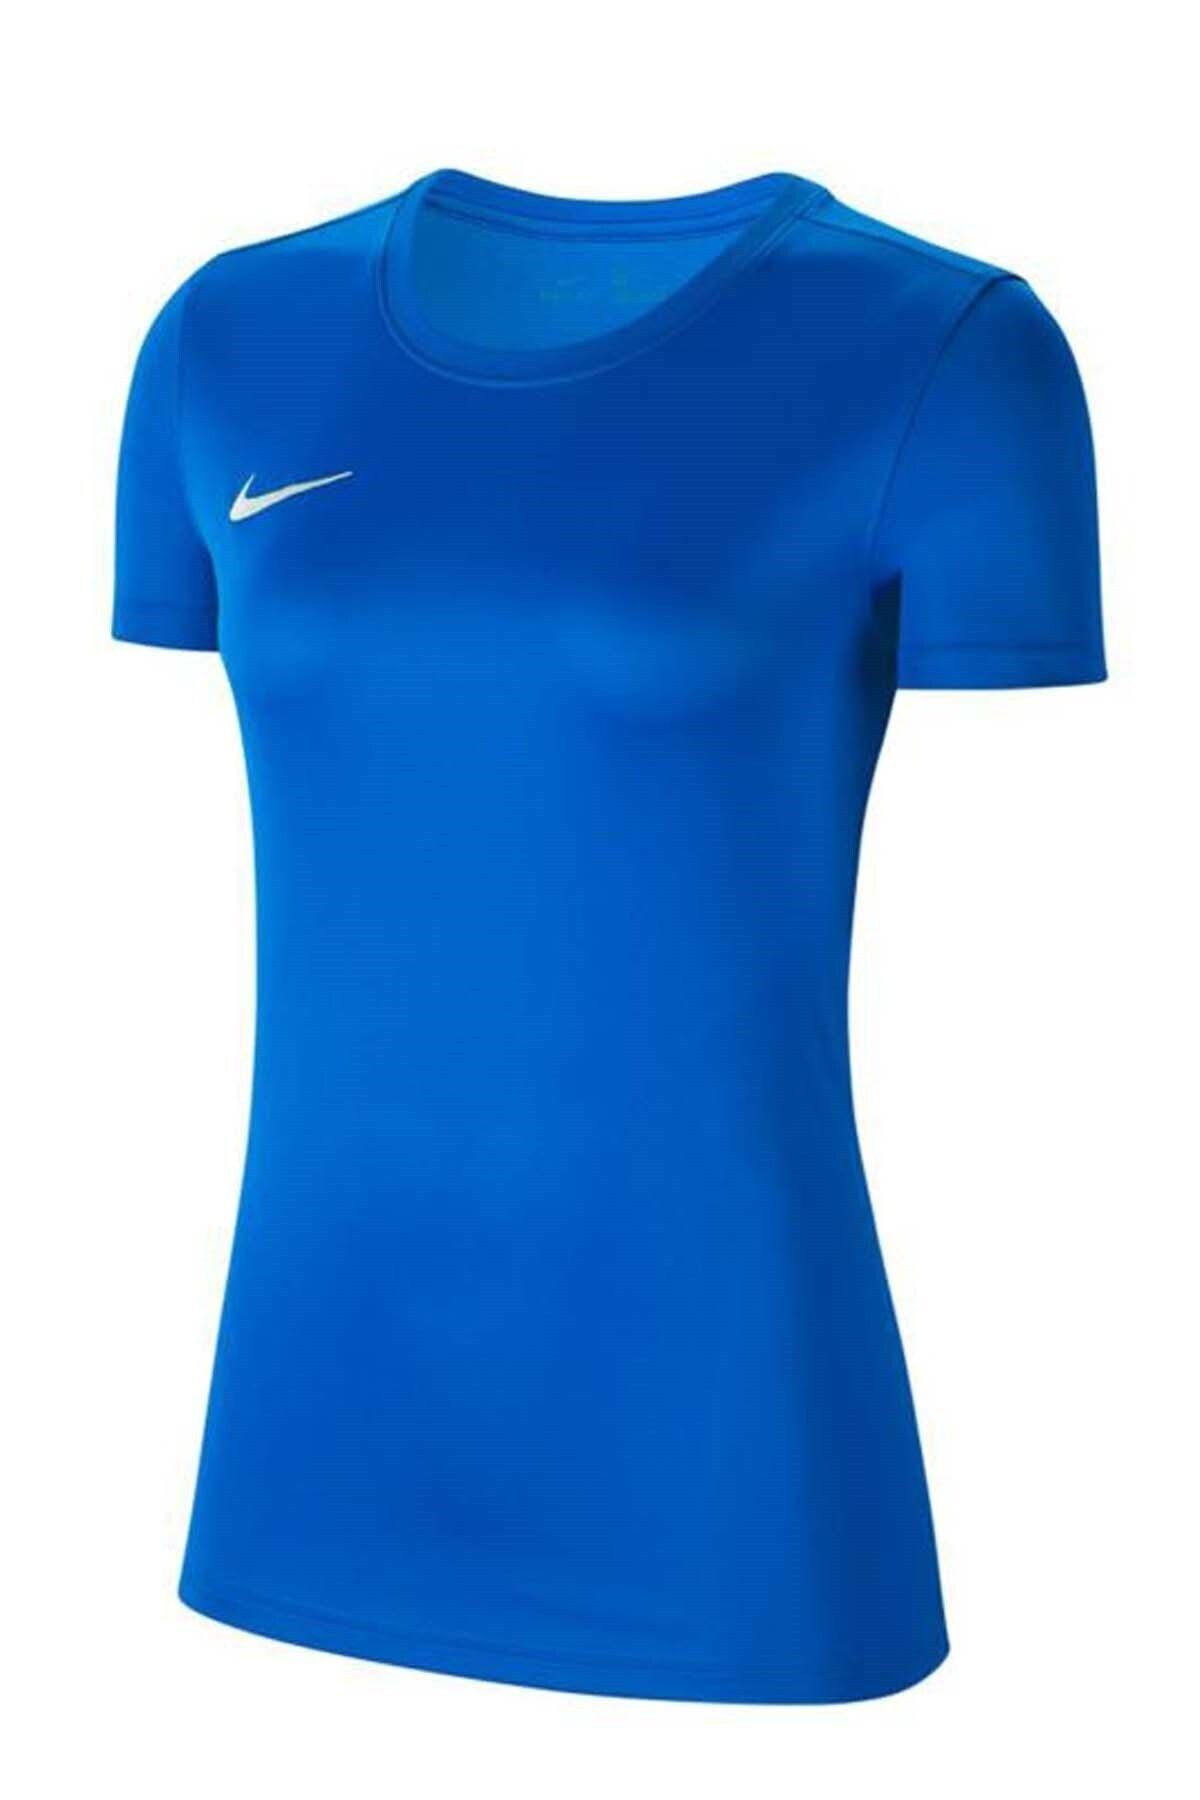 Nike Dry Park Vıı Kadın Tişörtü Bv6728-463